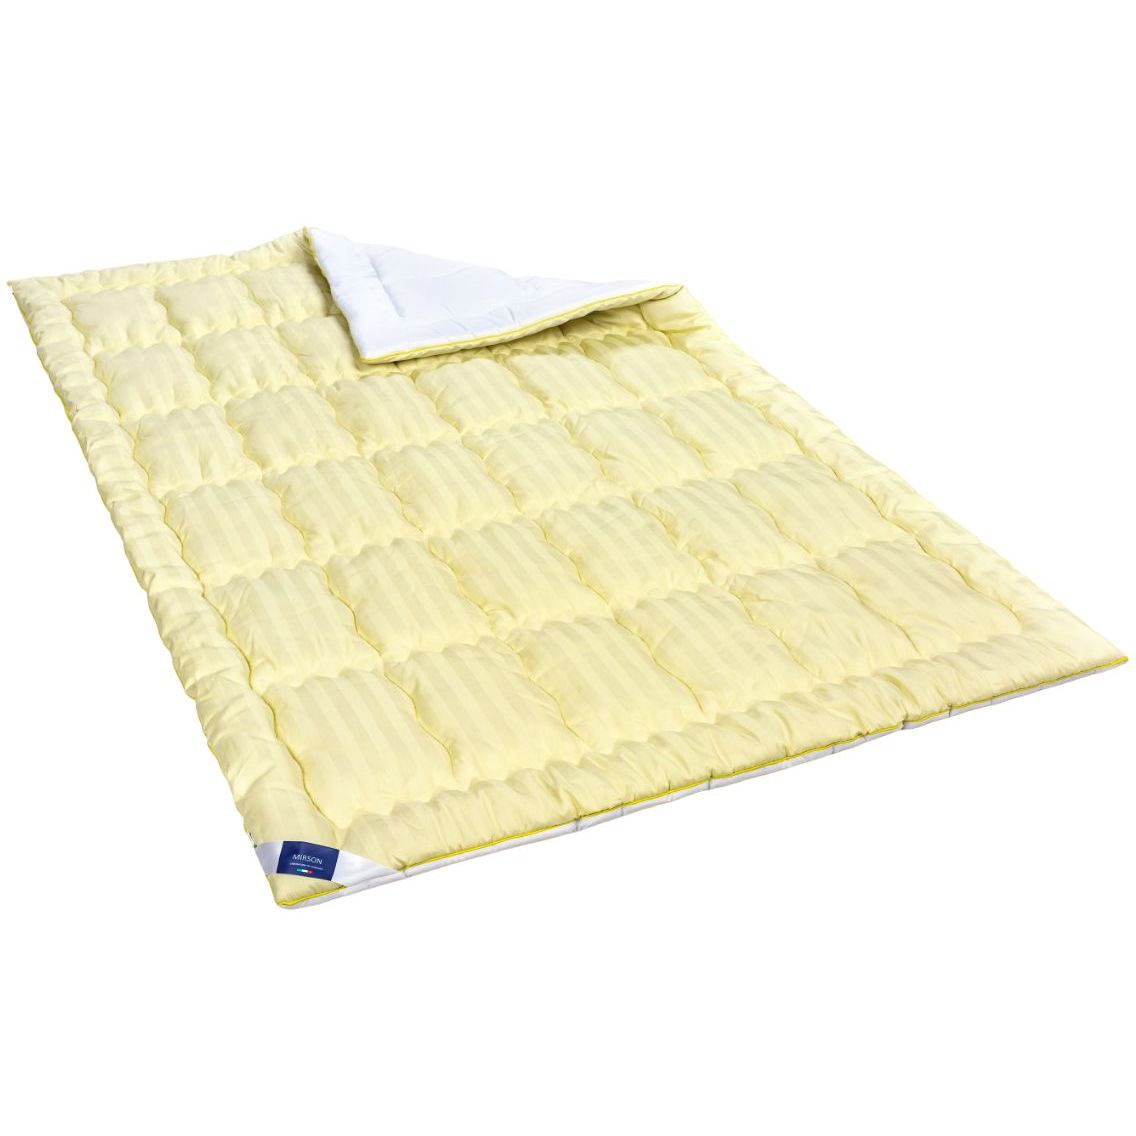 Одеяло антиаллергенное MirSon Carmela Hand Made EcoSilk №0555, зимнее, 200x220 см, желто-белое - фото 1